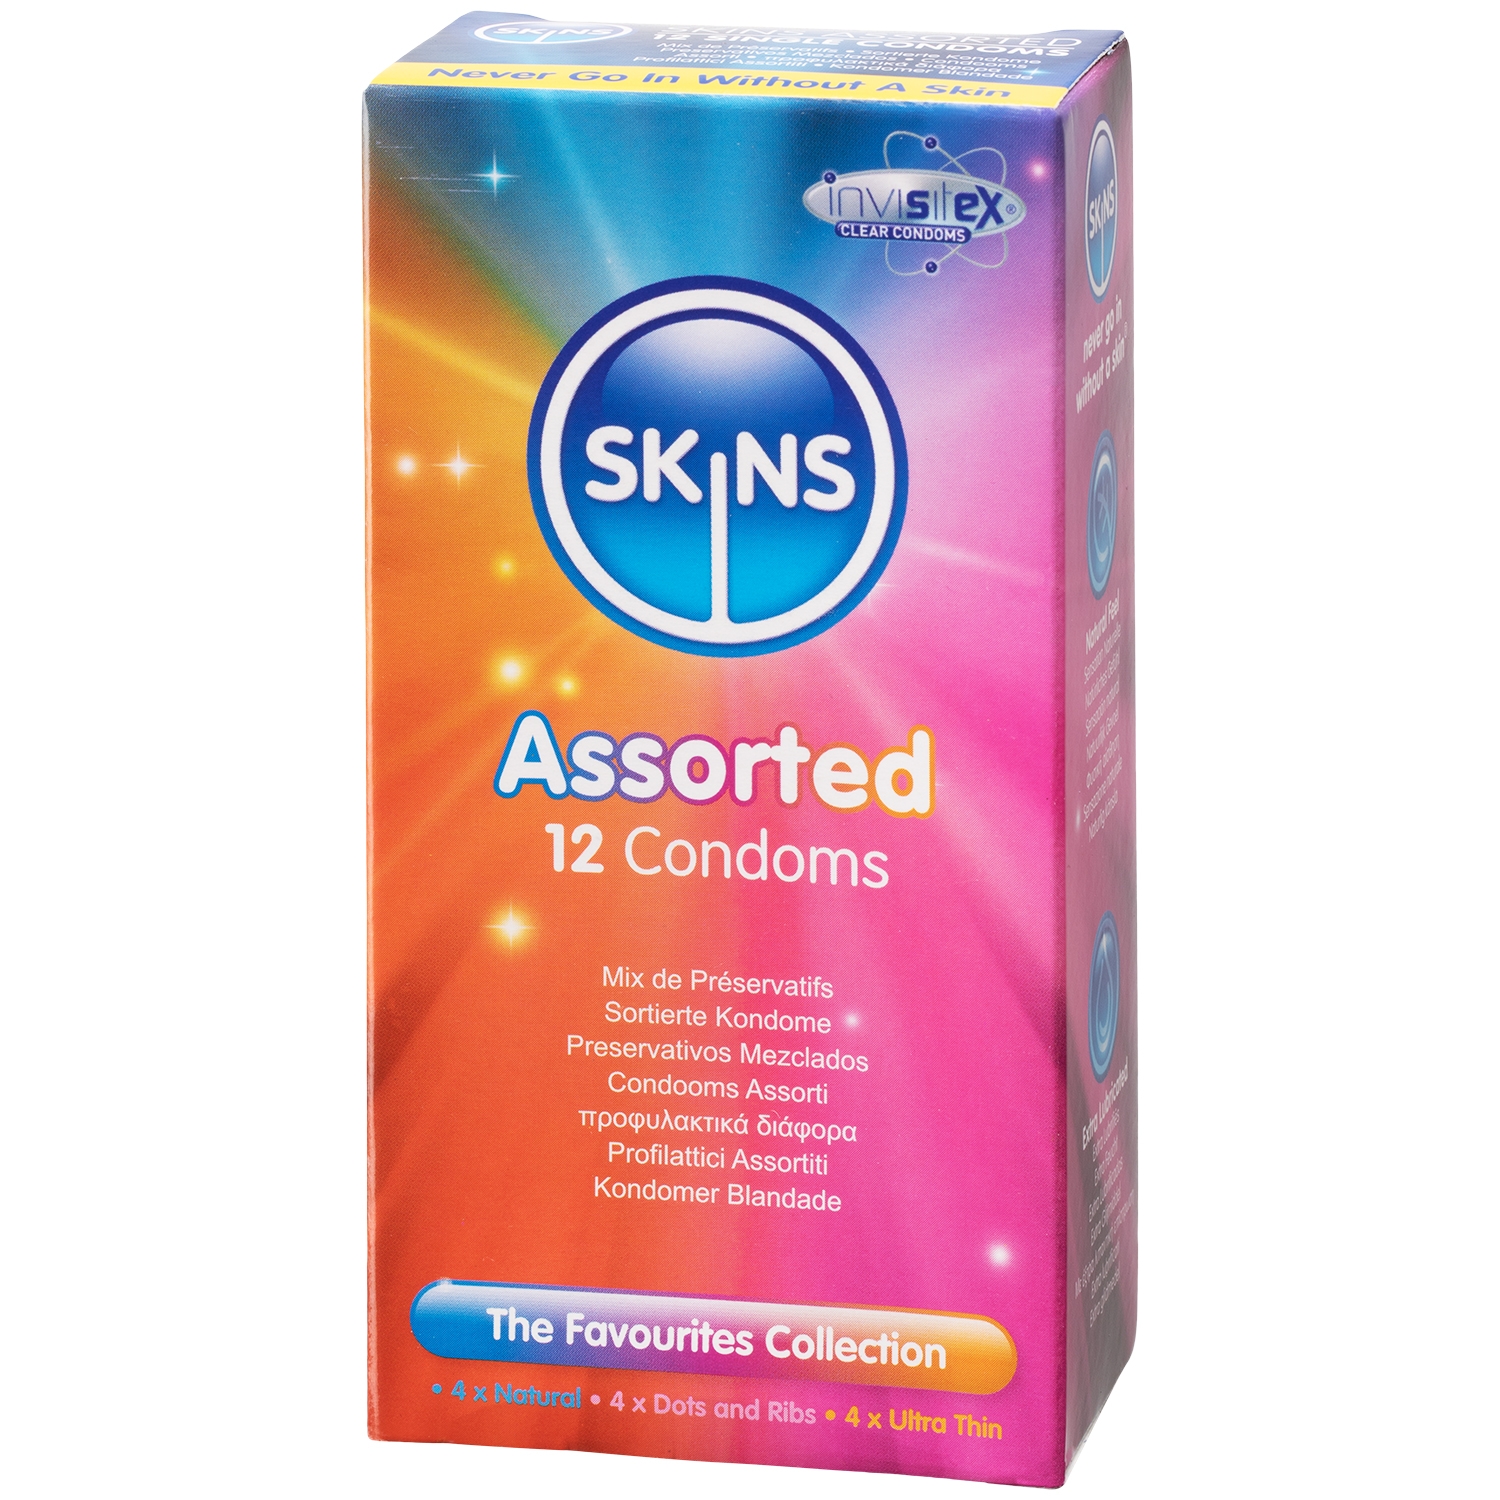 Skins Assorted Kondomer 12-pack - Klar | Tillbehör//Kondomer//Män//Bättre Sex//Specialkondomer//Par kondomer//Stora Kondomer//Tunna Kondomer//Skins//3 för 249:- | Intimast